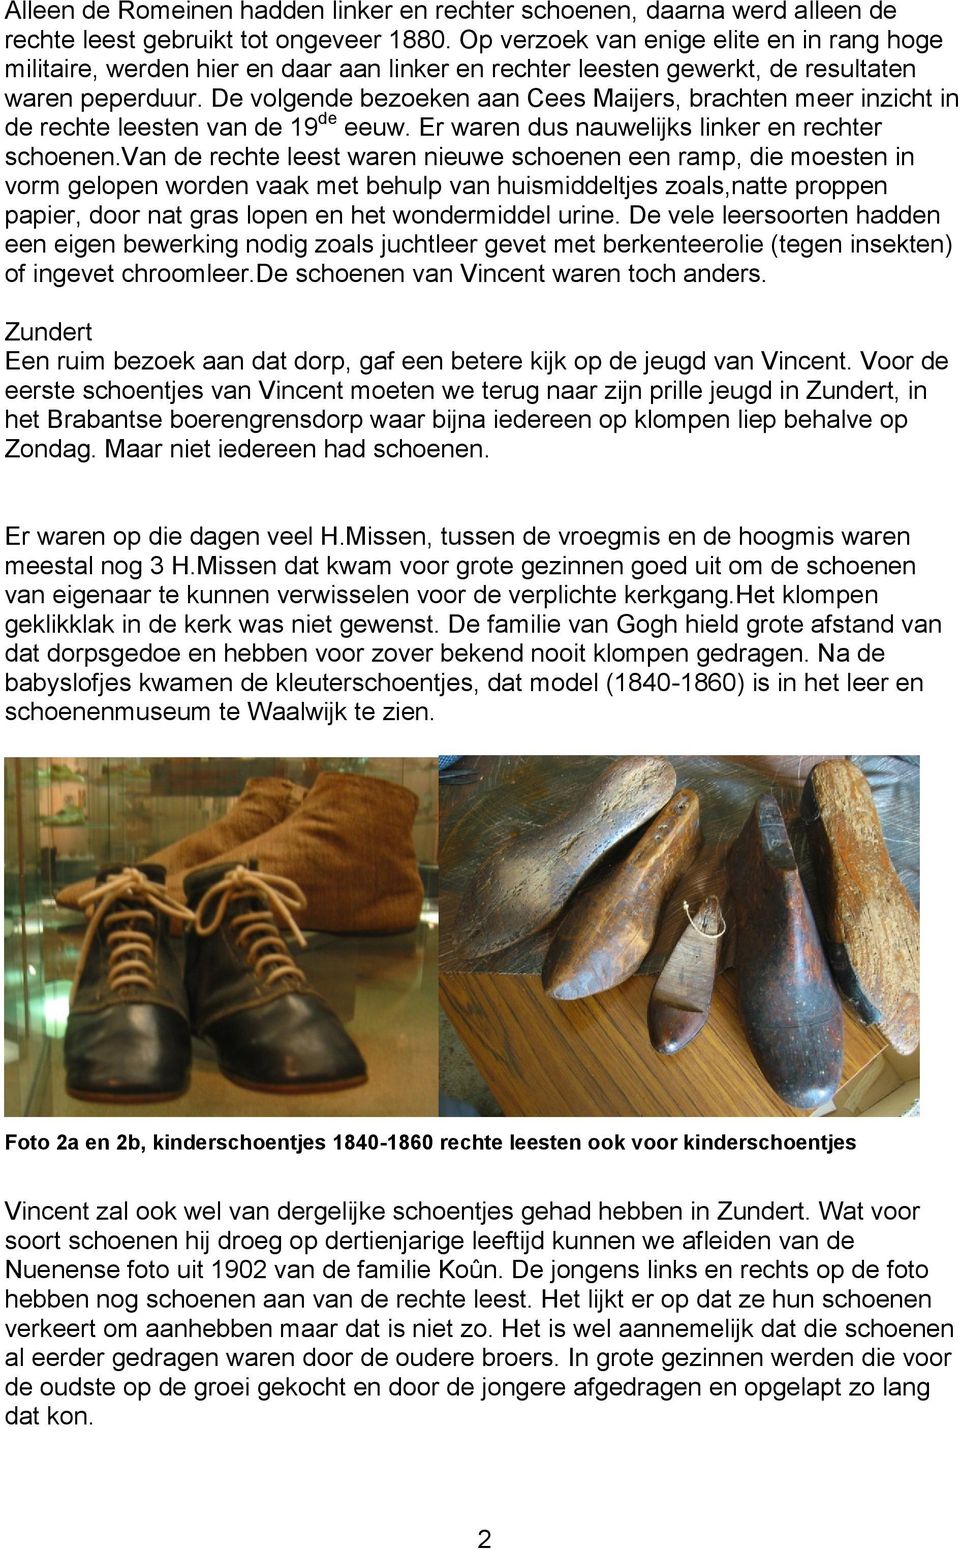 De volgende bezoeken aan Cees Maijers, brachten meer inzicht in de rechte leesten van de 19 de eeuw. Er waren dus nauwelijks linker en rechter schoenen.